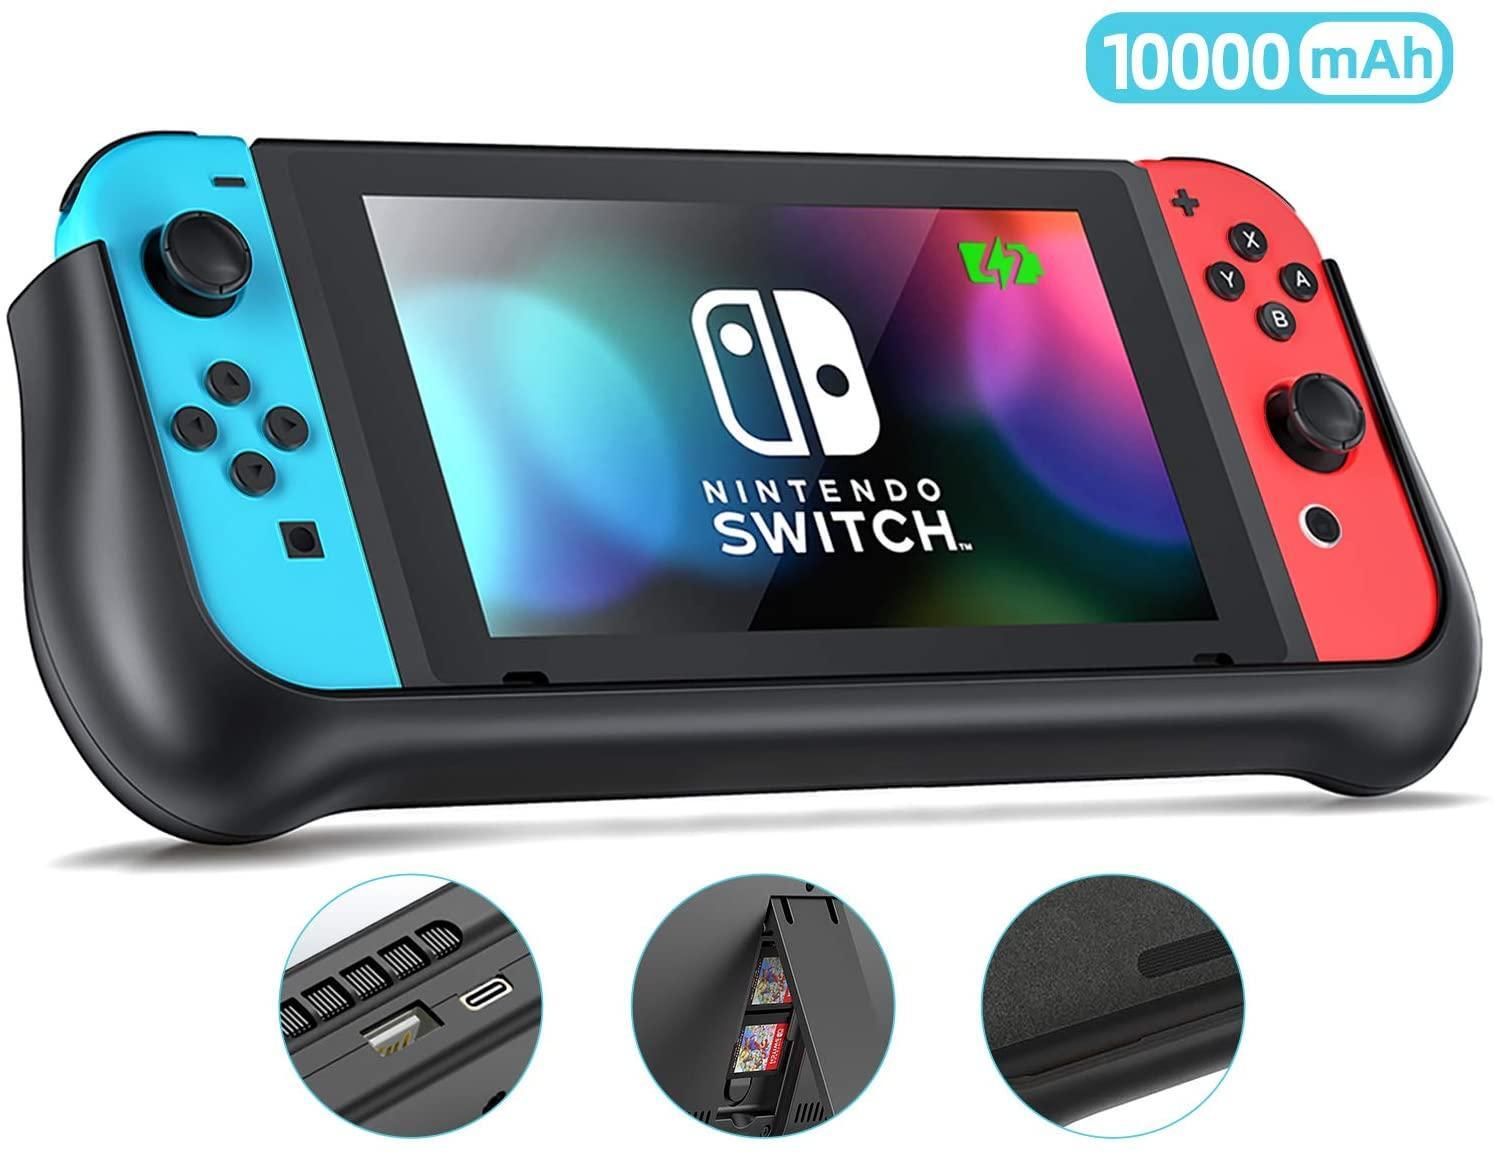 Bærbar lader kompatibel med Nintendo Switch - svart - Elkjøp